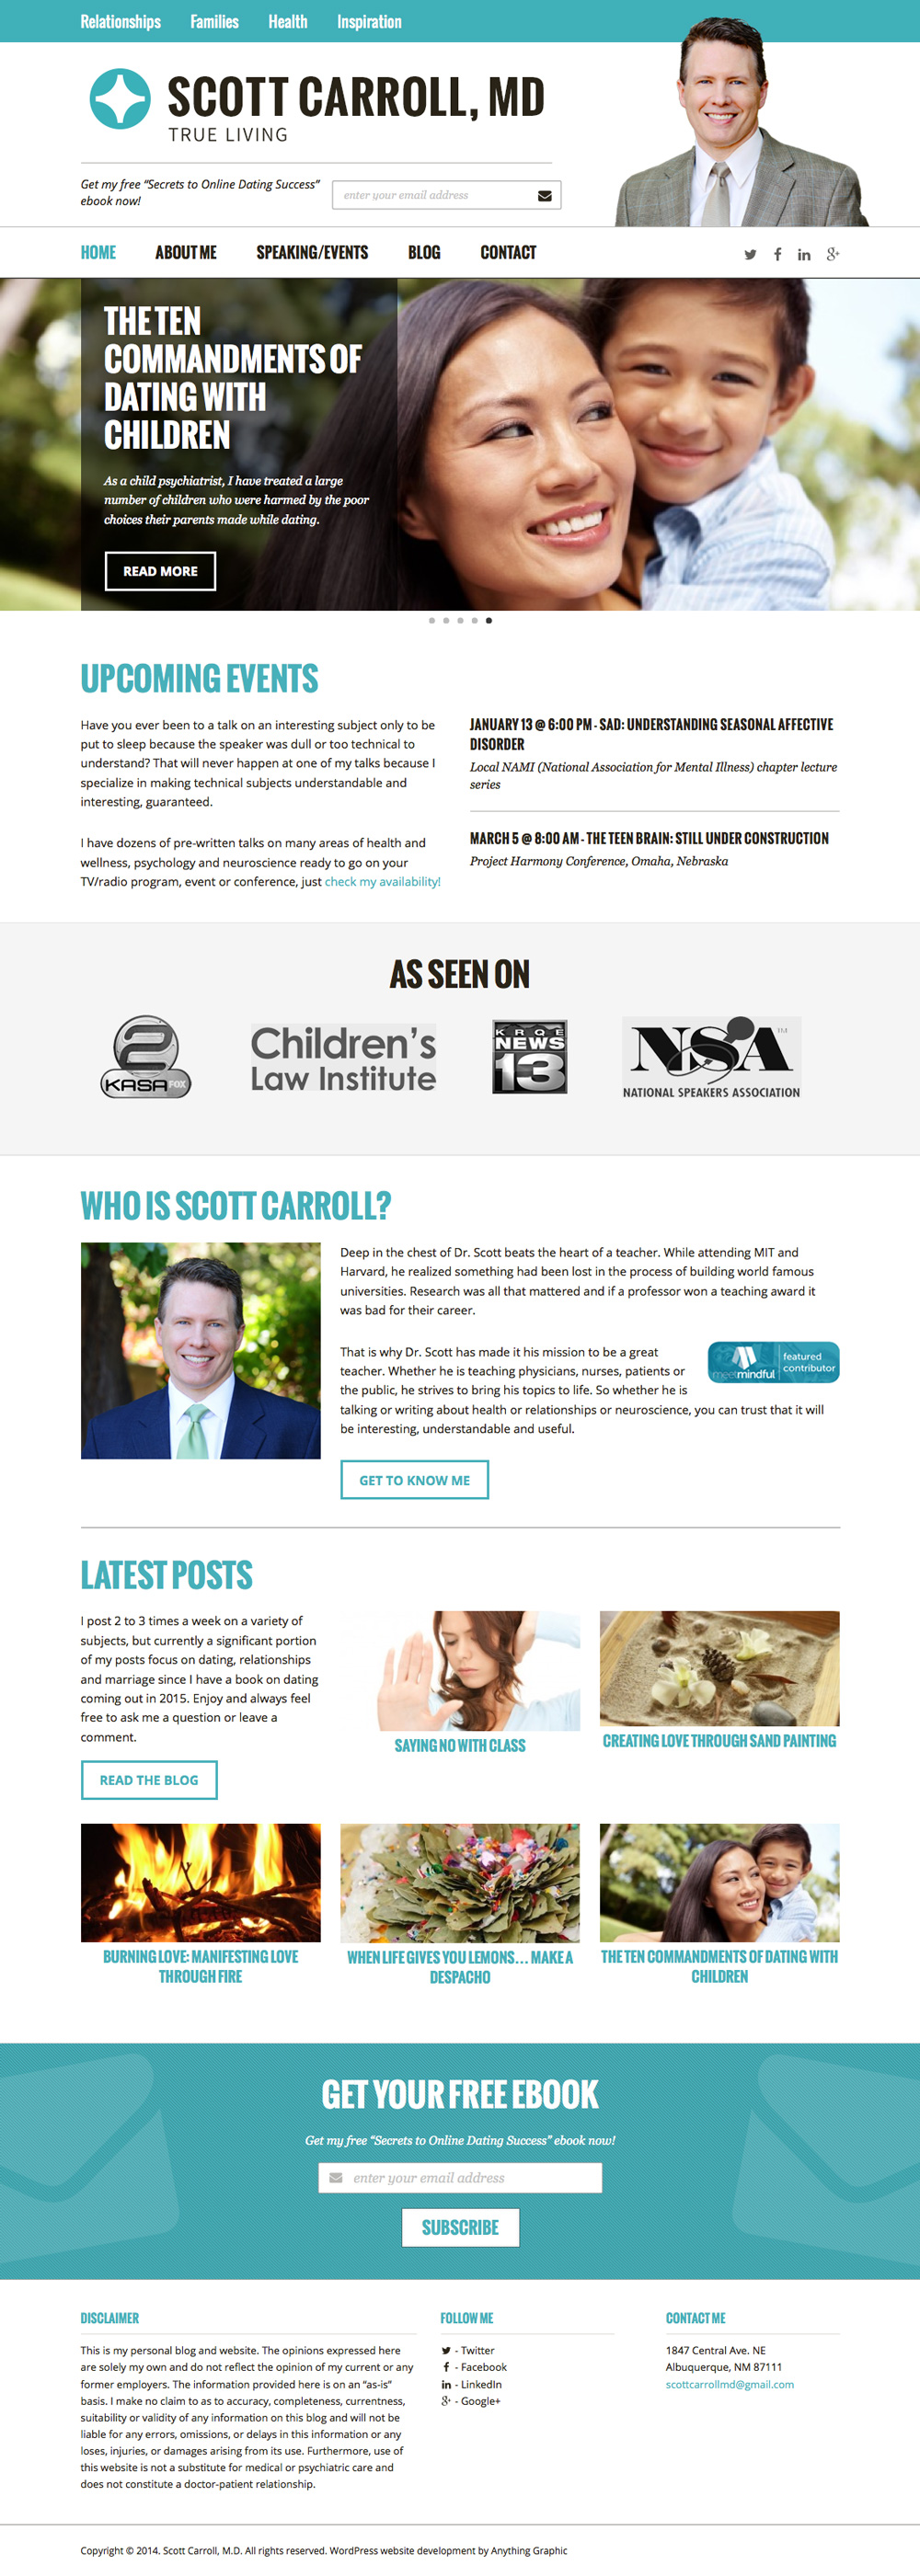 Scott Carroll M.D. - Custom Website Design & WordPress Development